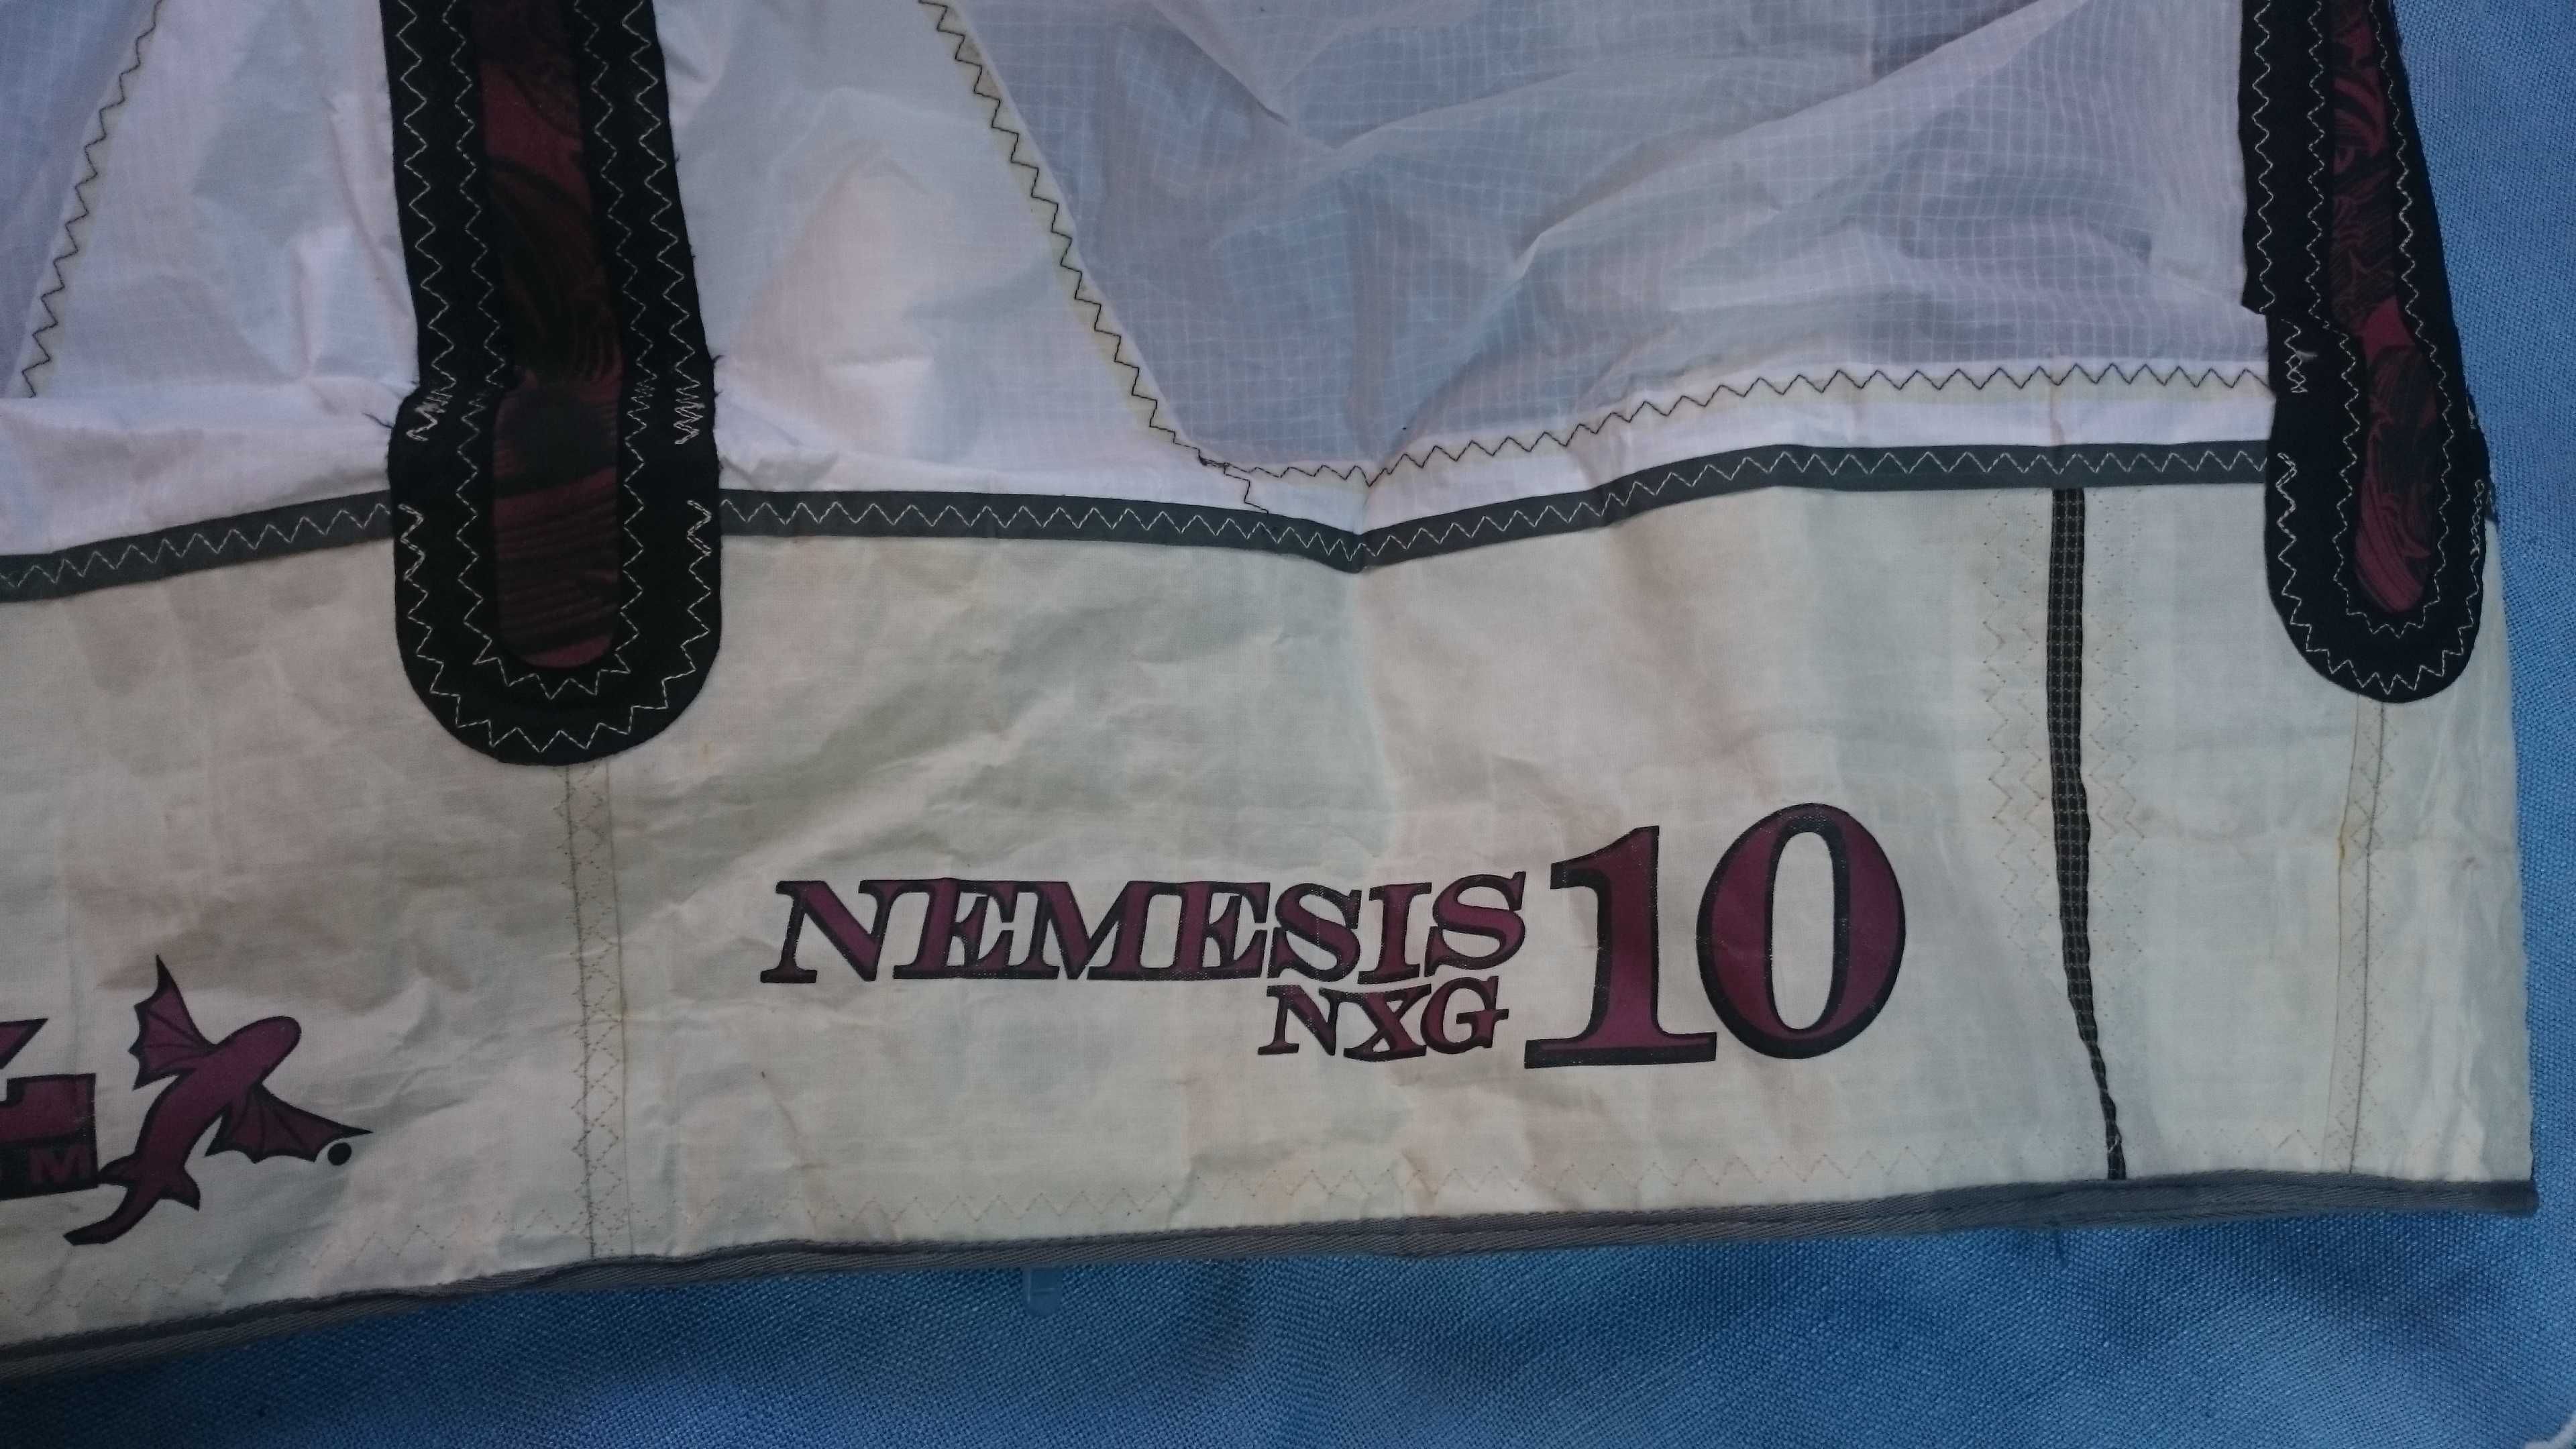 KITE surfing latawiec kompletny firmy BEST Nemesis NXG 10